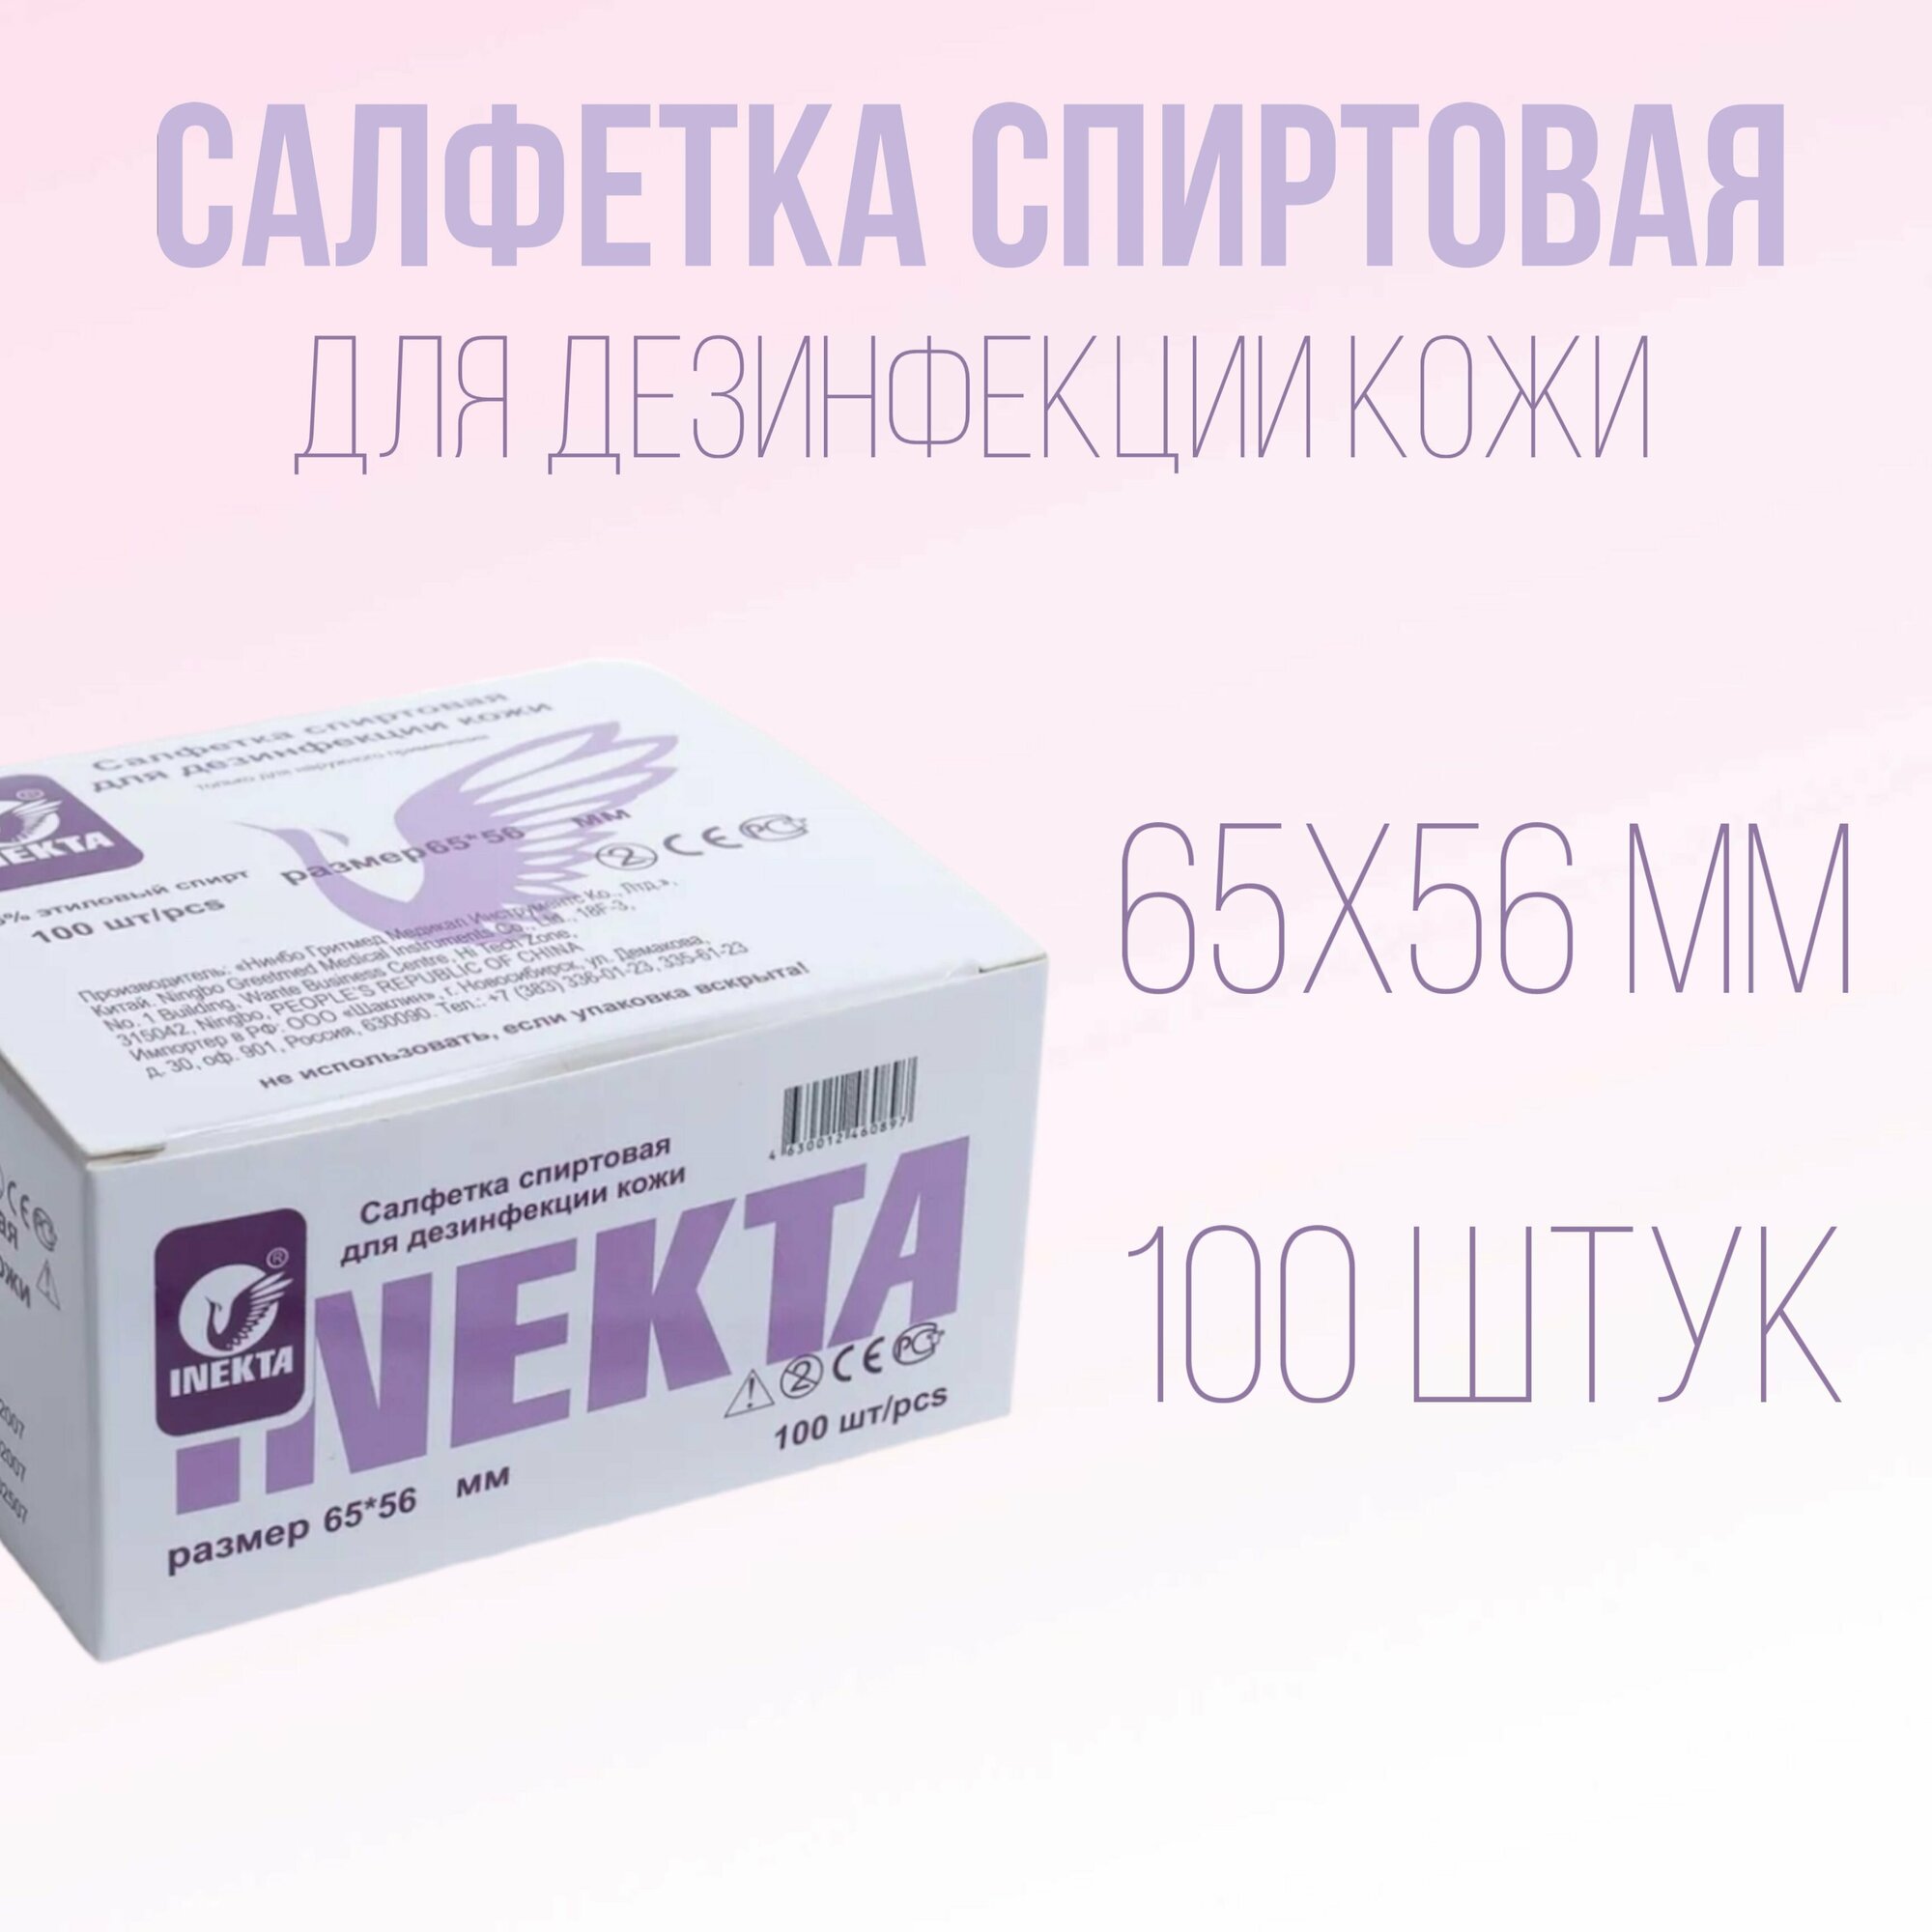 Салфетка инъекционная спиртовая одноразовая, 65 х 56 мм, 100 шт. INEKTA, медицинские, стерильные, антисептические для процедур